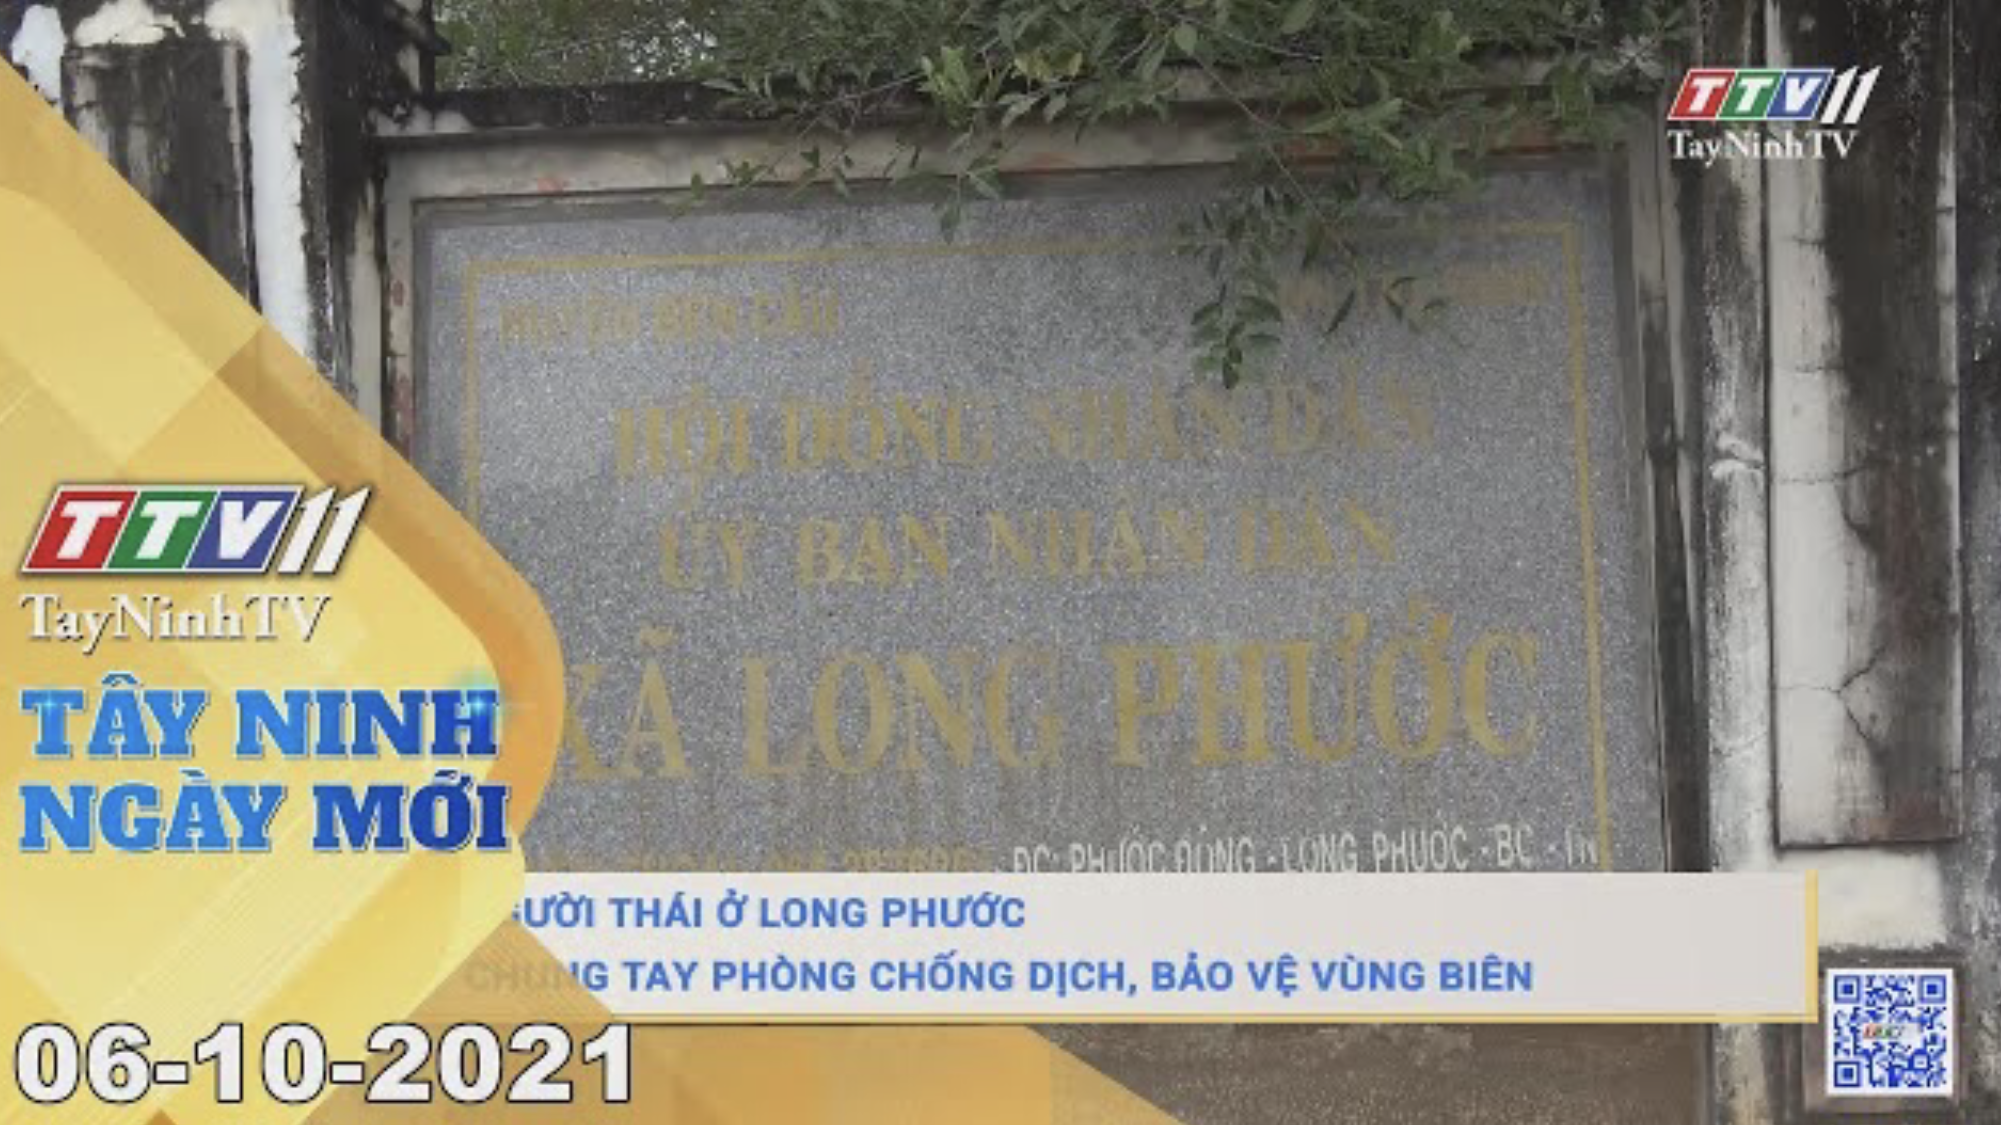 TÂY NINH NGÀY MỚI 06/10/2021 | Tin tức hôm nay | TayNinhTV